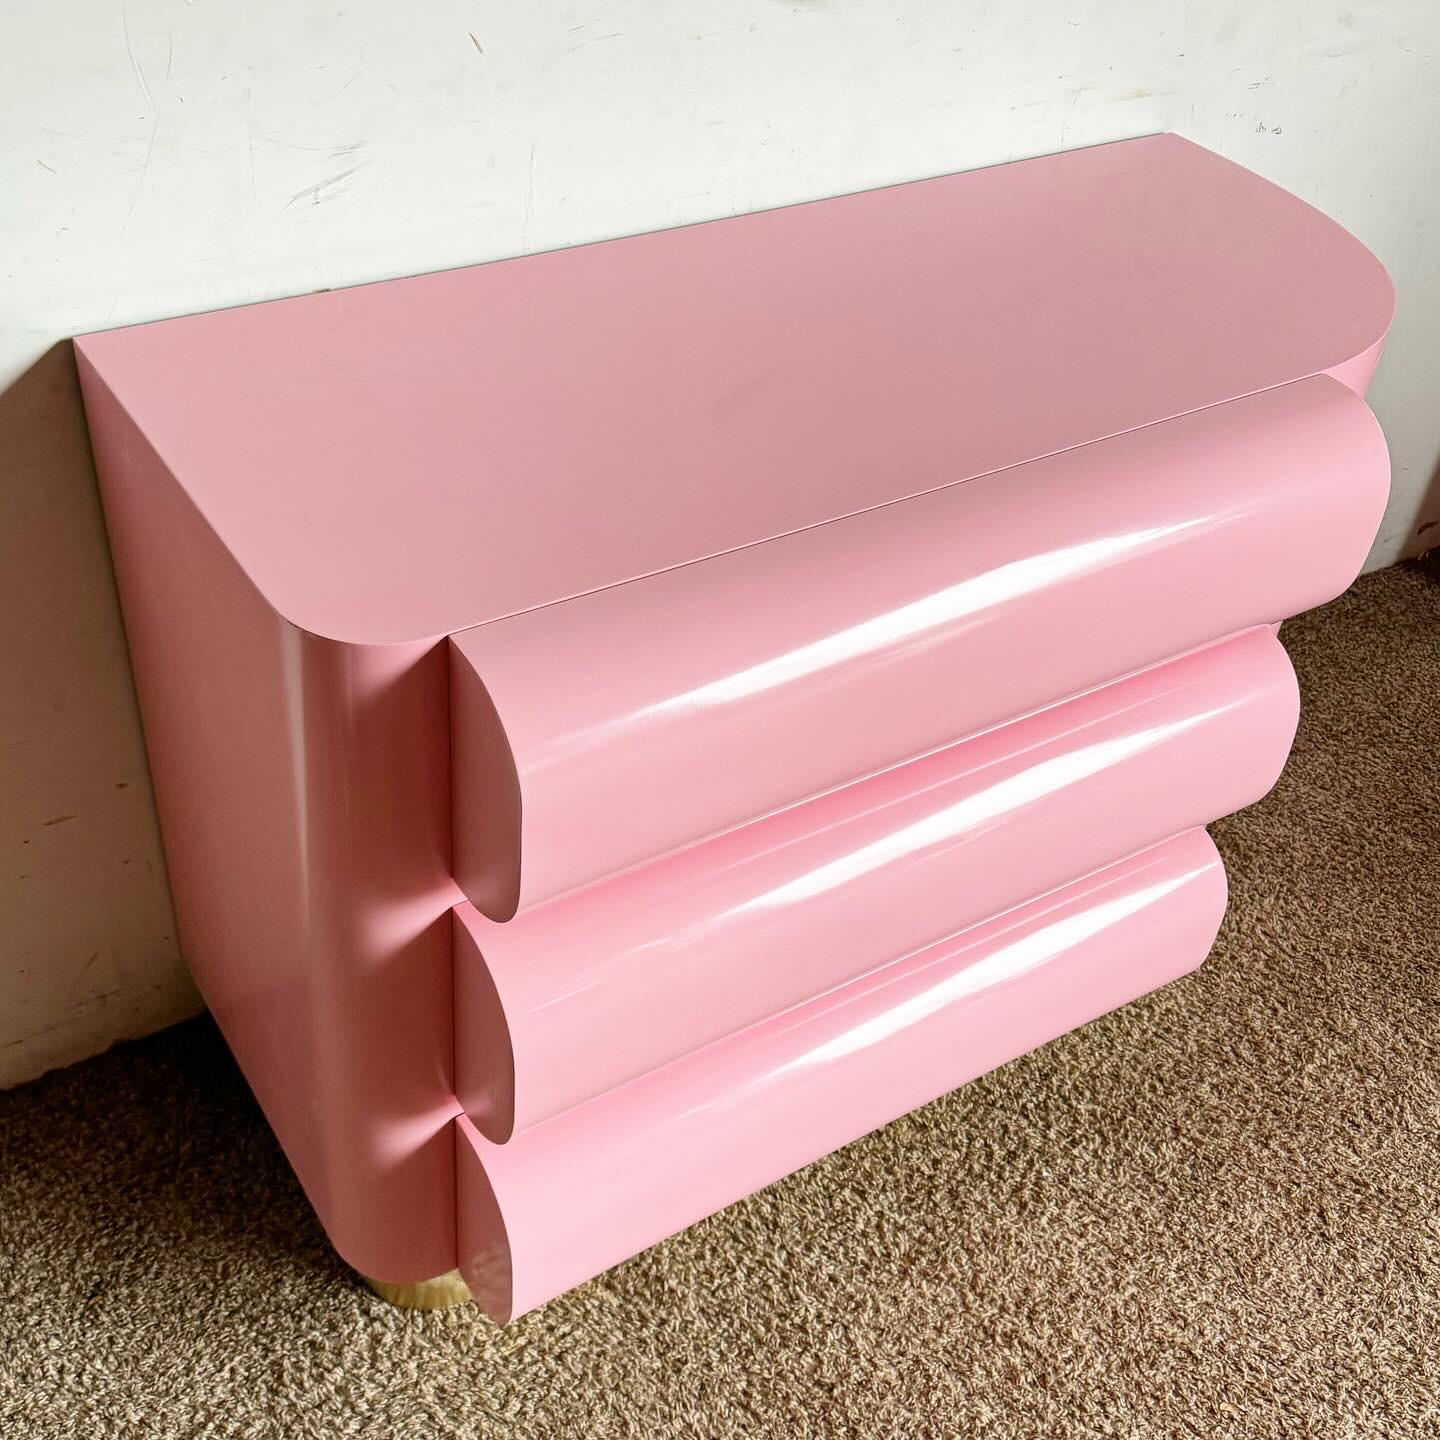 Transformez votre espace avec la commode/commode à tiroirs Postmodern Pink Laquered Curved Bullnose Commode/Commode à tiroirs. Cette pièce présente un design incurvé unique et une finition laquée rose vibrante, créant une déclaration moderne et